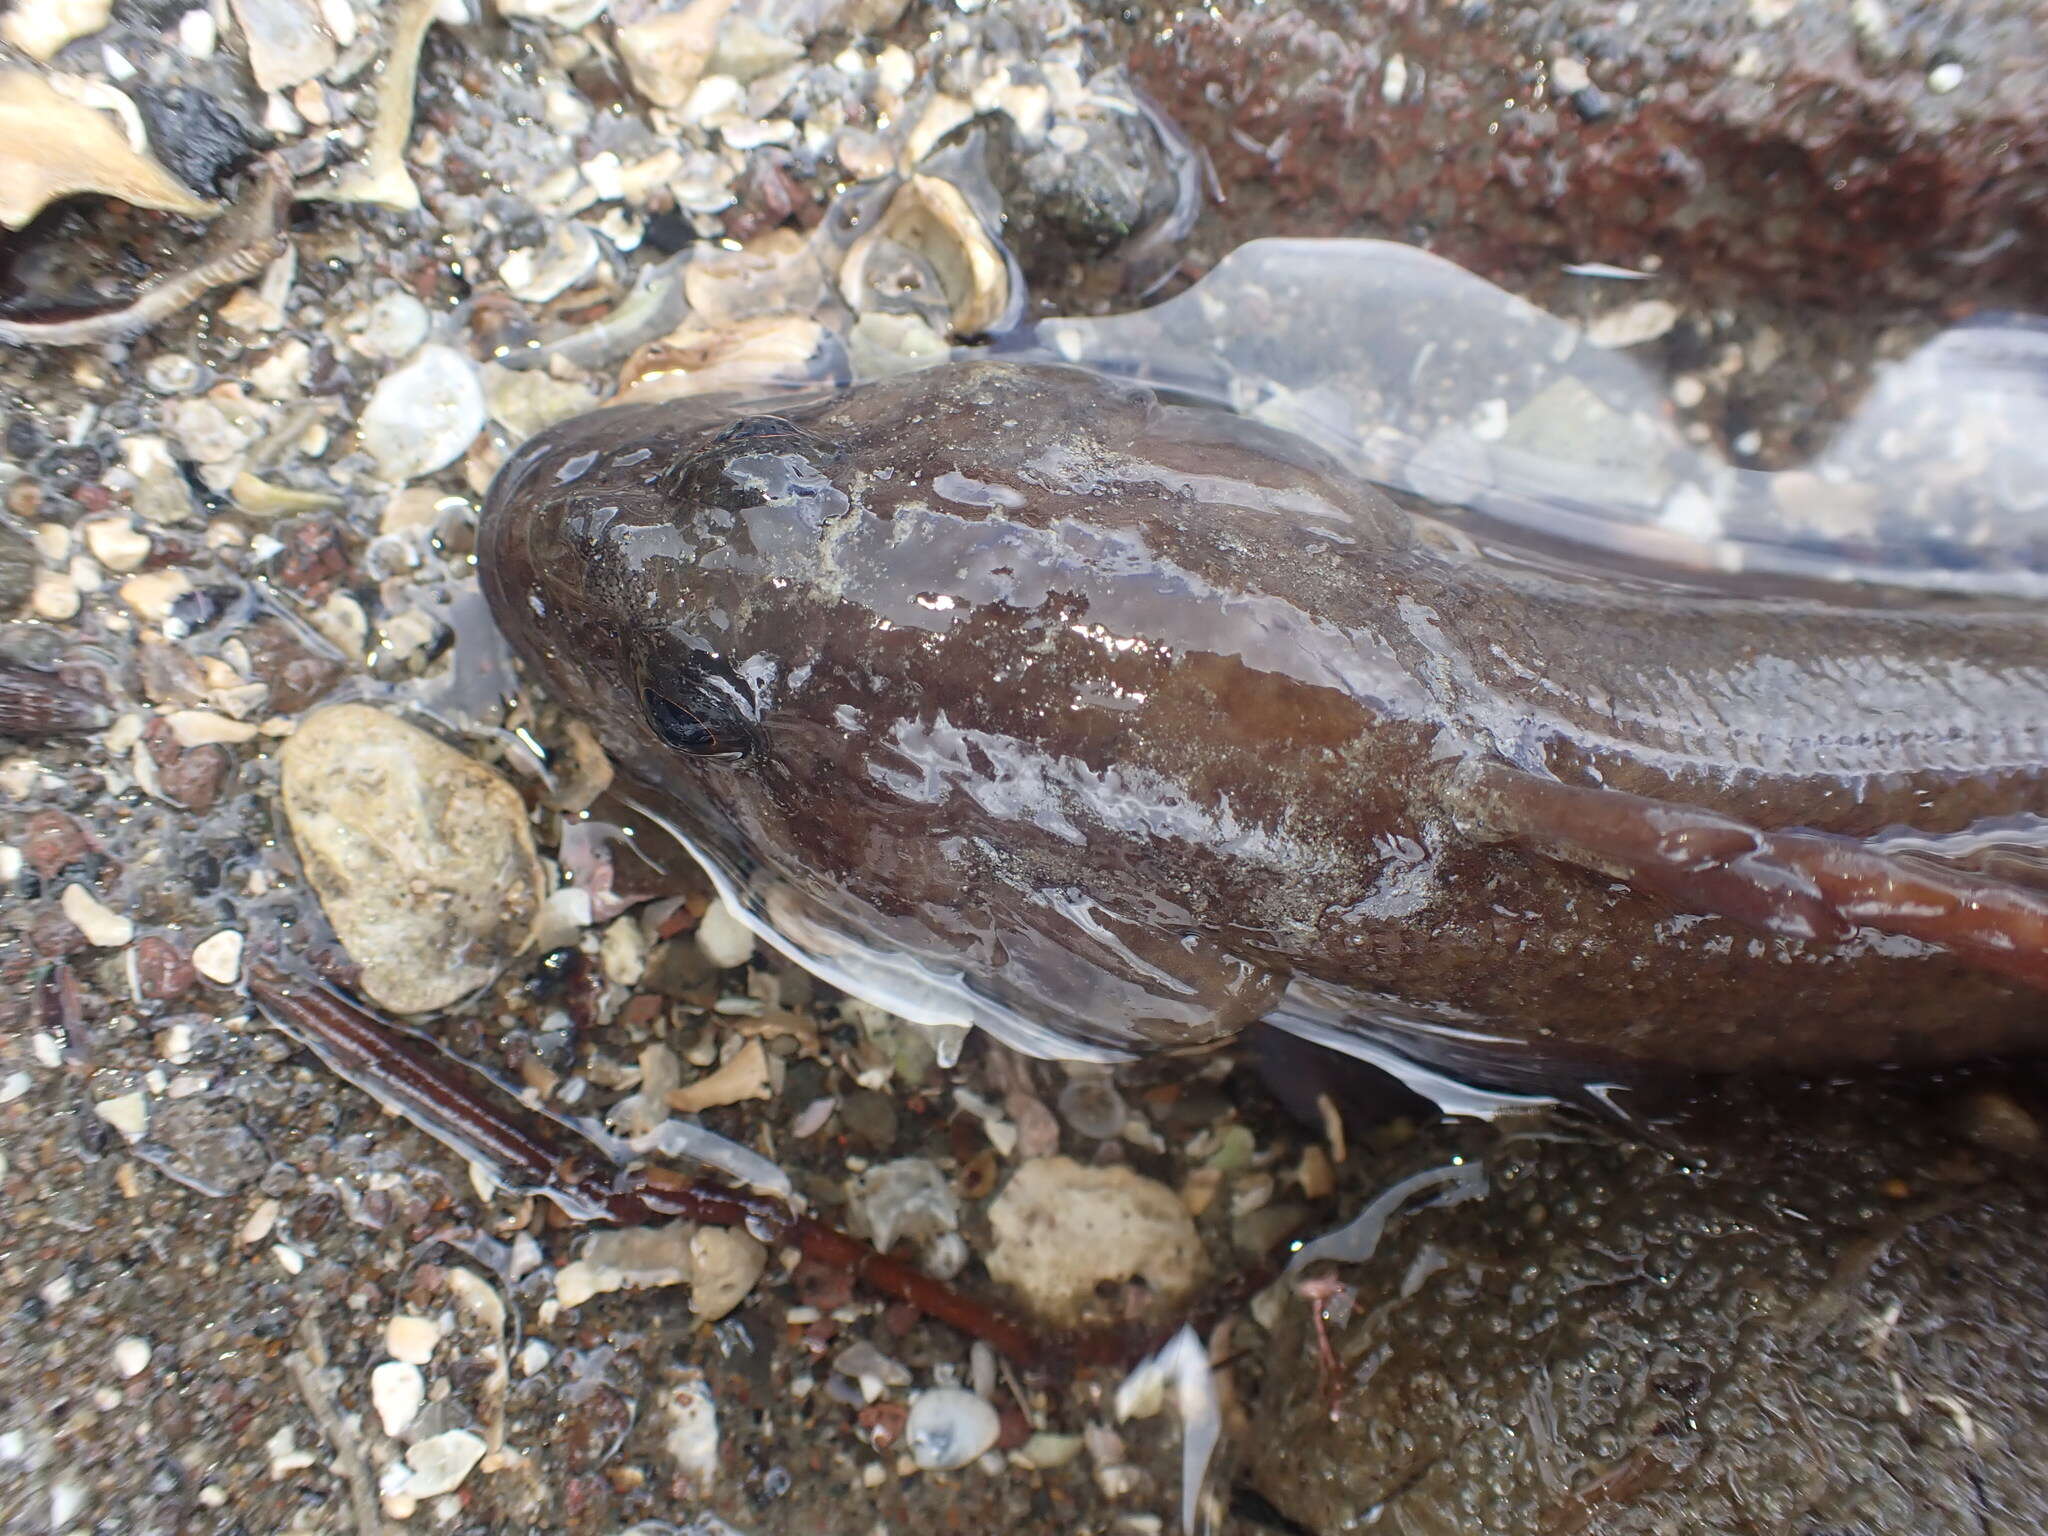 Image of Stout rockfish